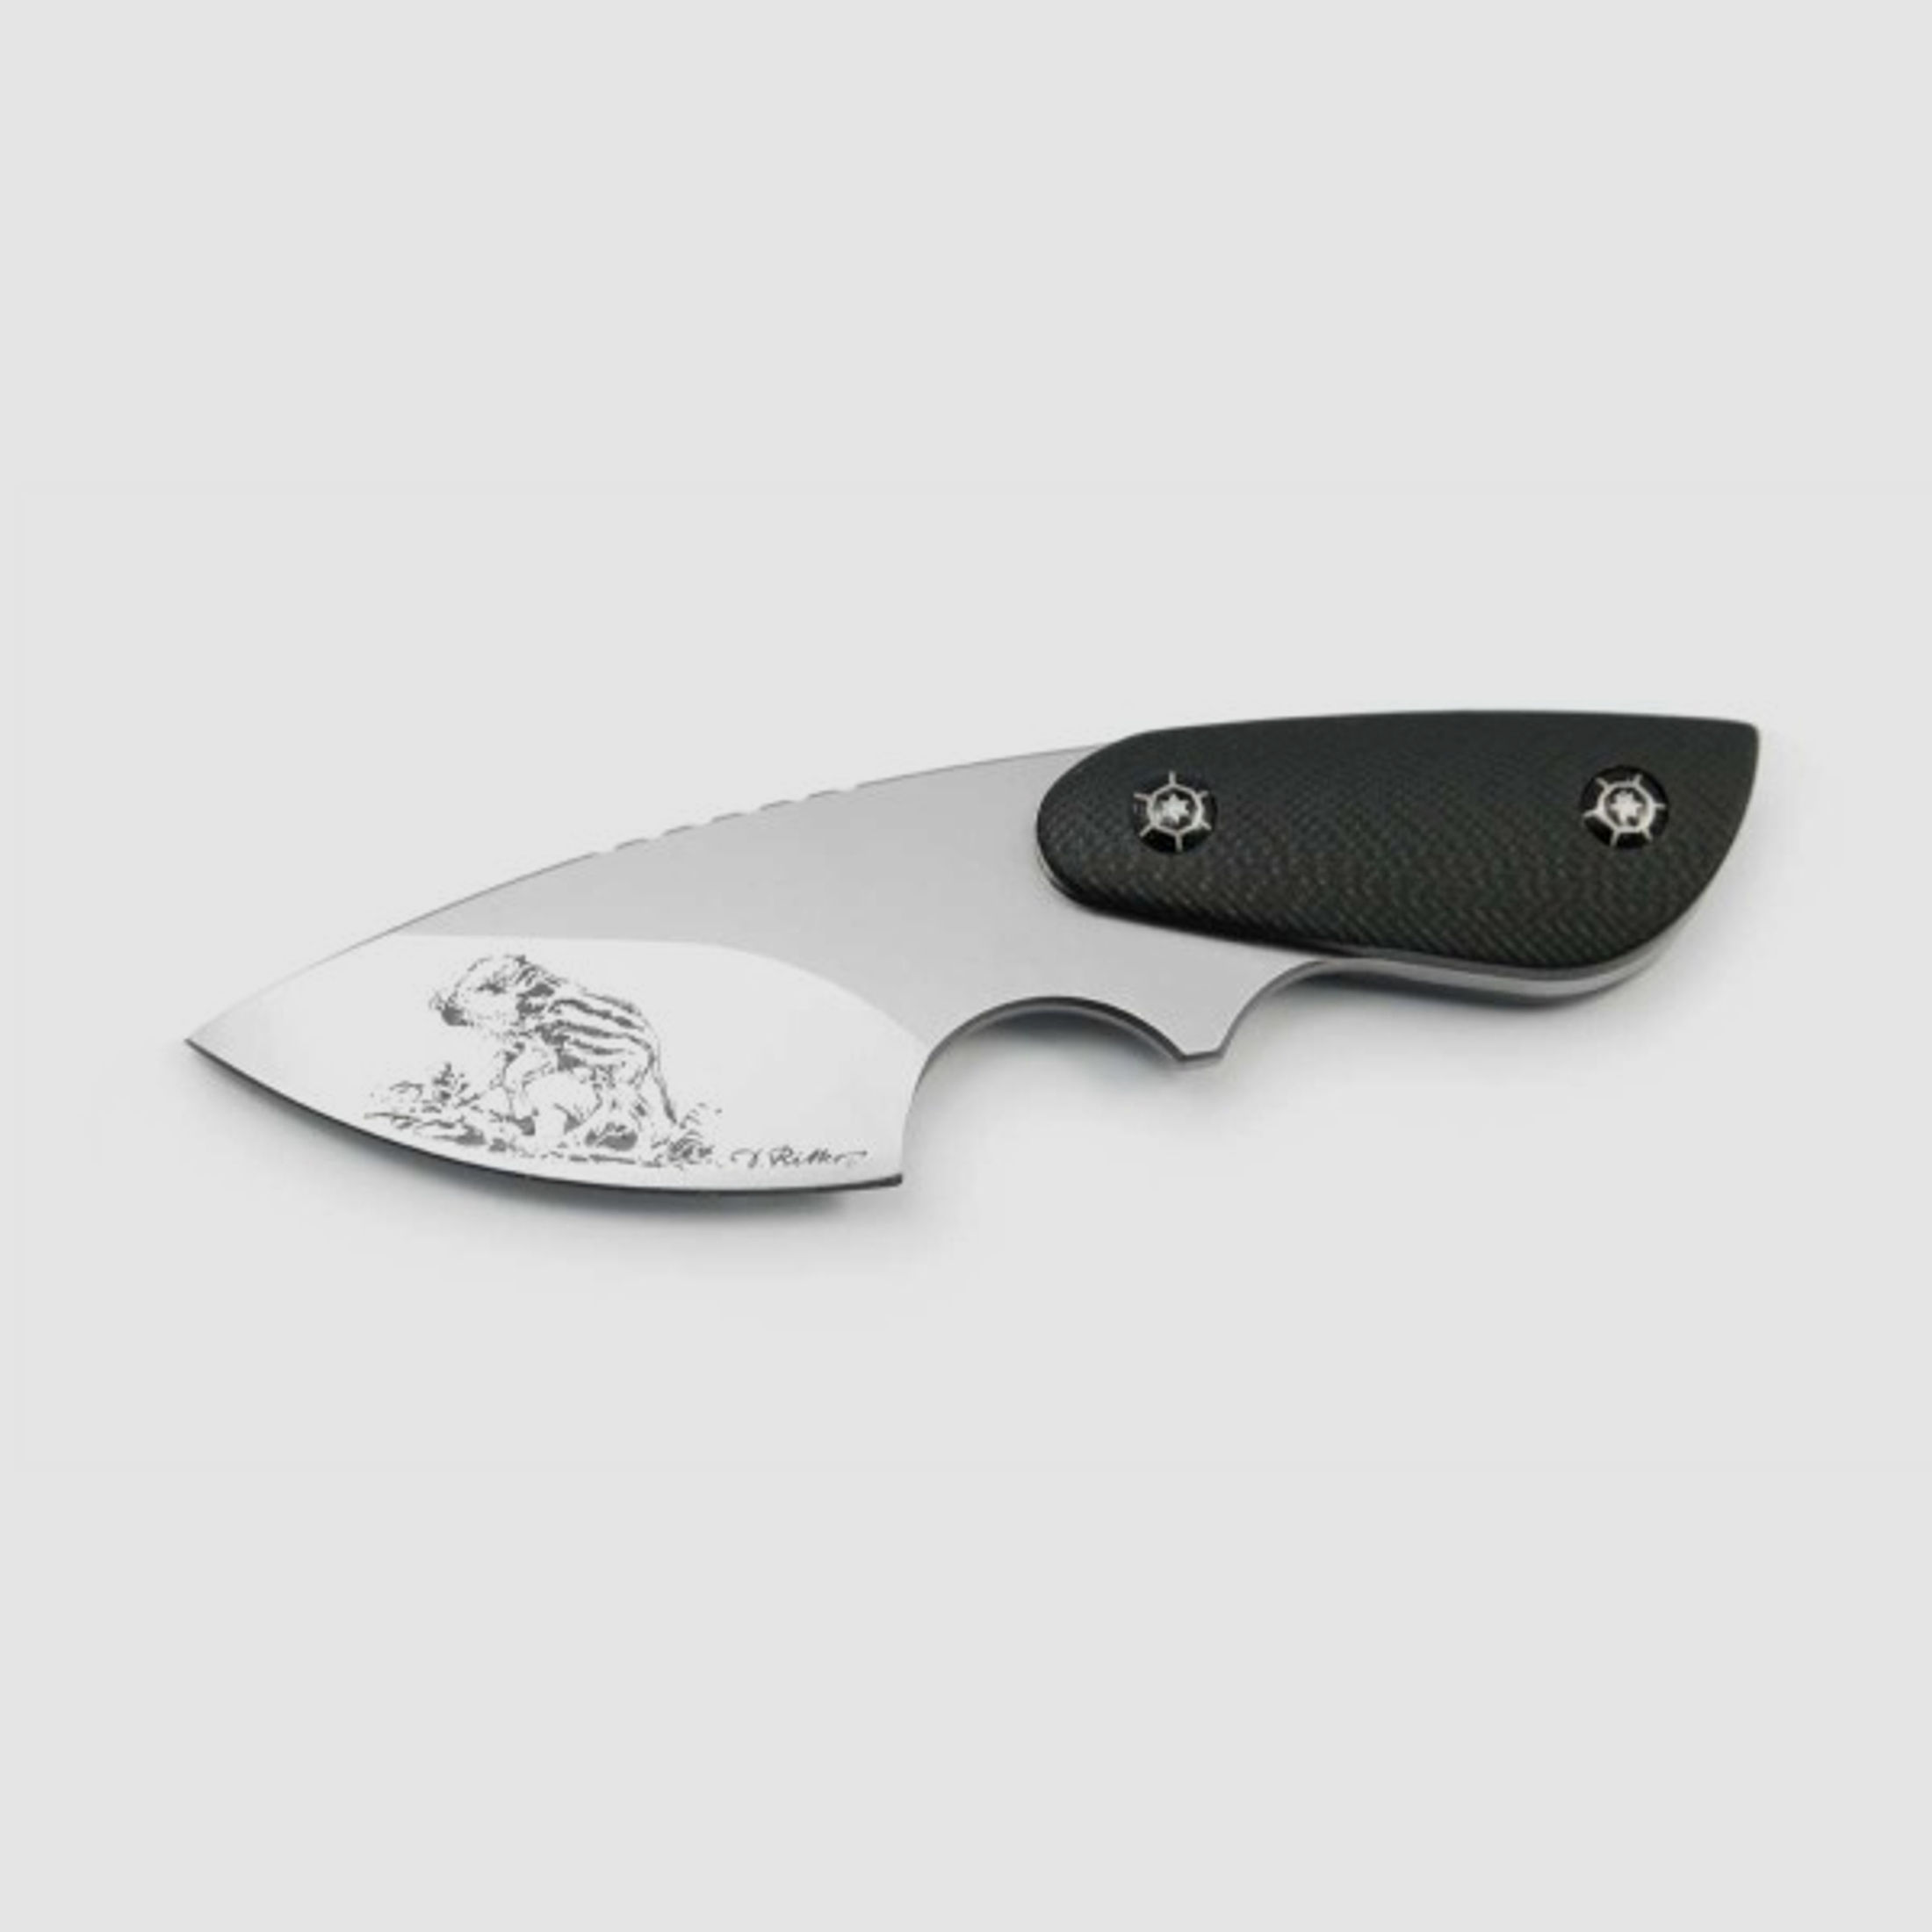 PUMA IP wild boar frischling, G10 schwarz, Neck-Knife